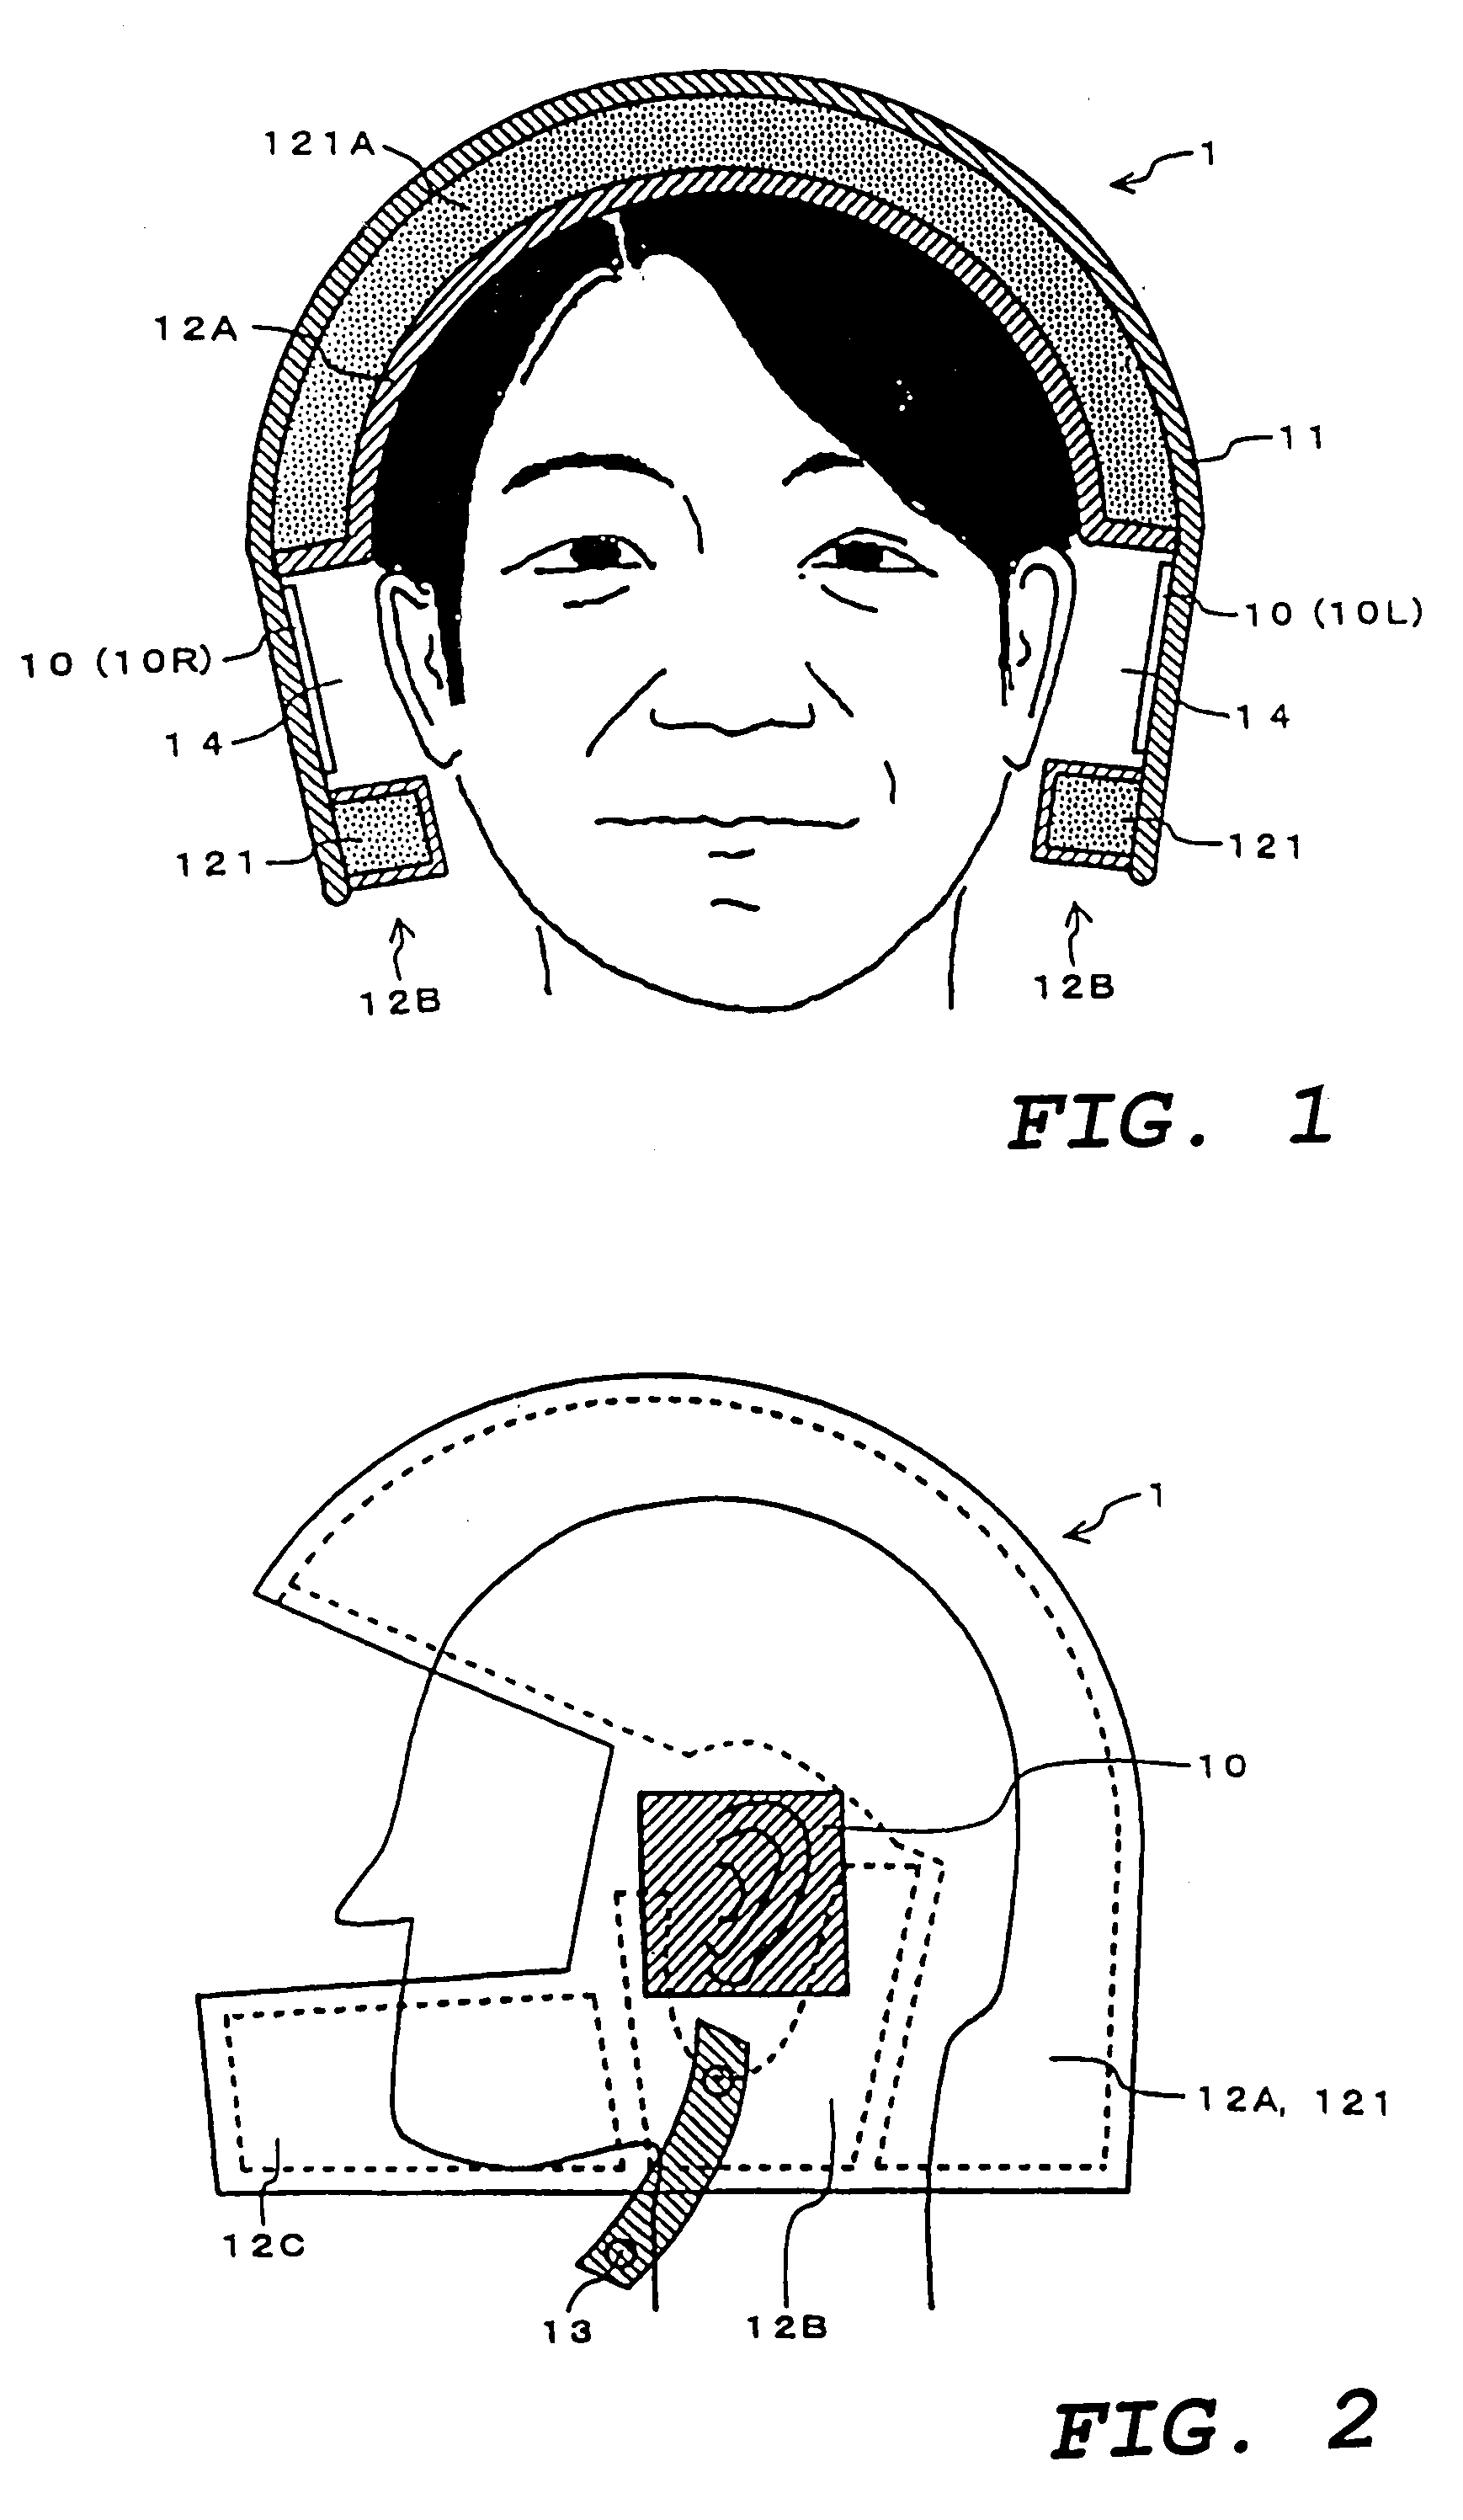 Helmet with built-in speaker system and speaker system for helmet